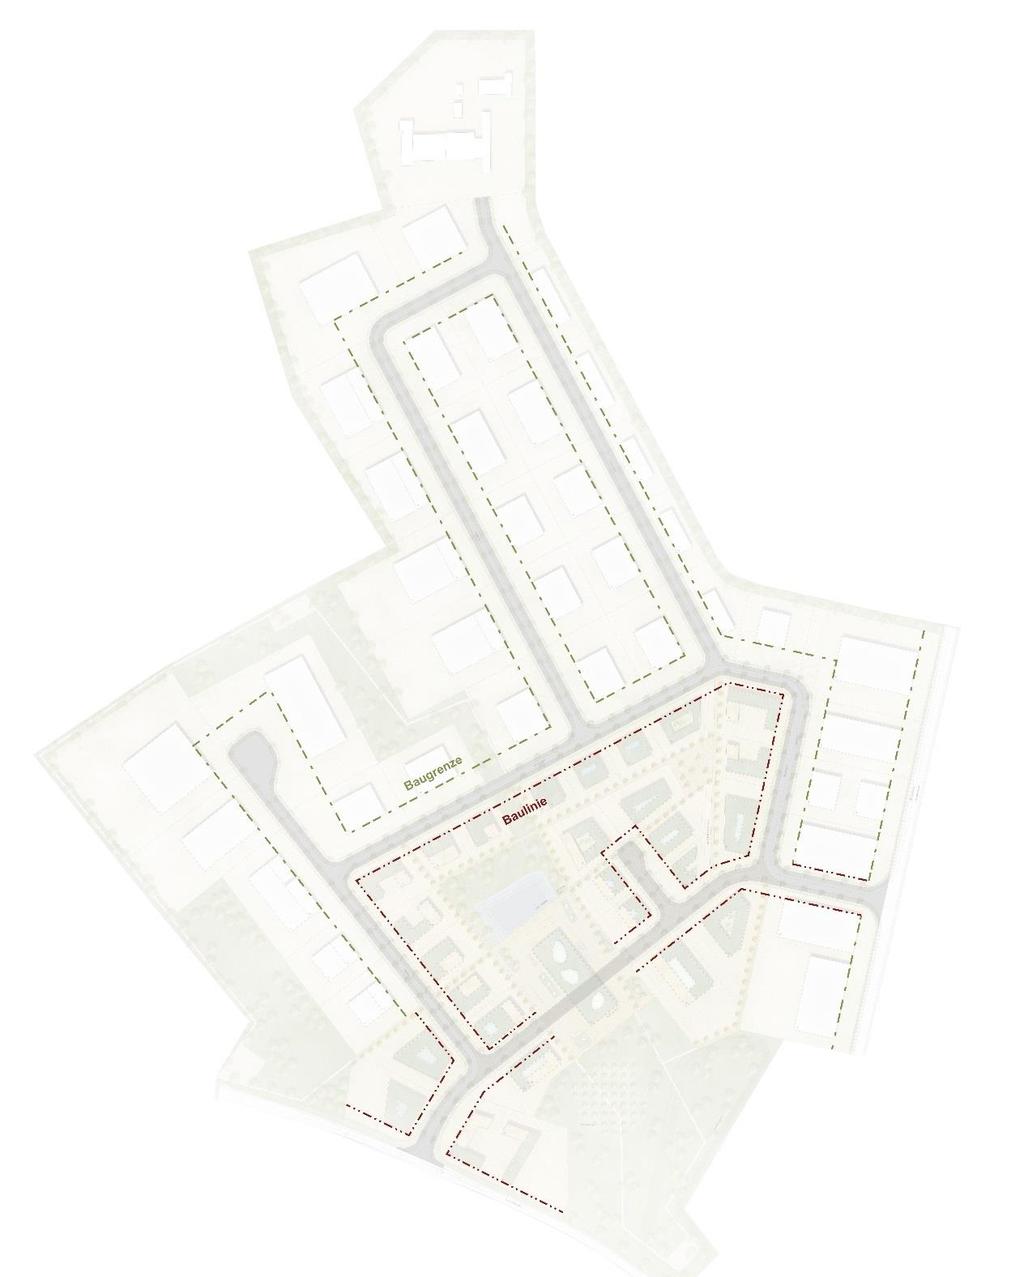 Baugrenzen Das Plangebiet wird mit einer Baugrenze und einer Baulinie belegt: - einheitliches Straßen-